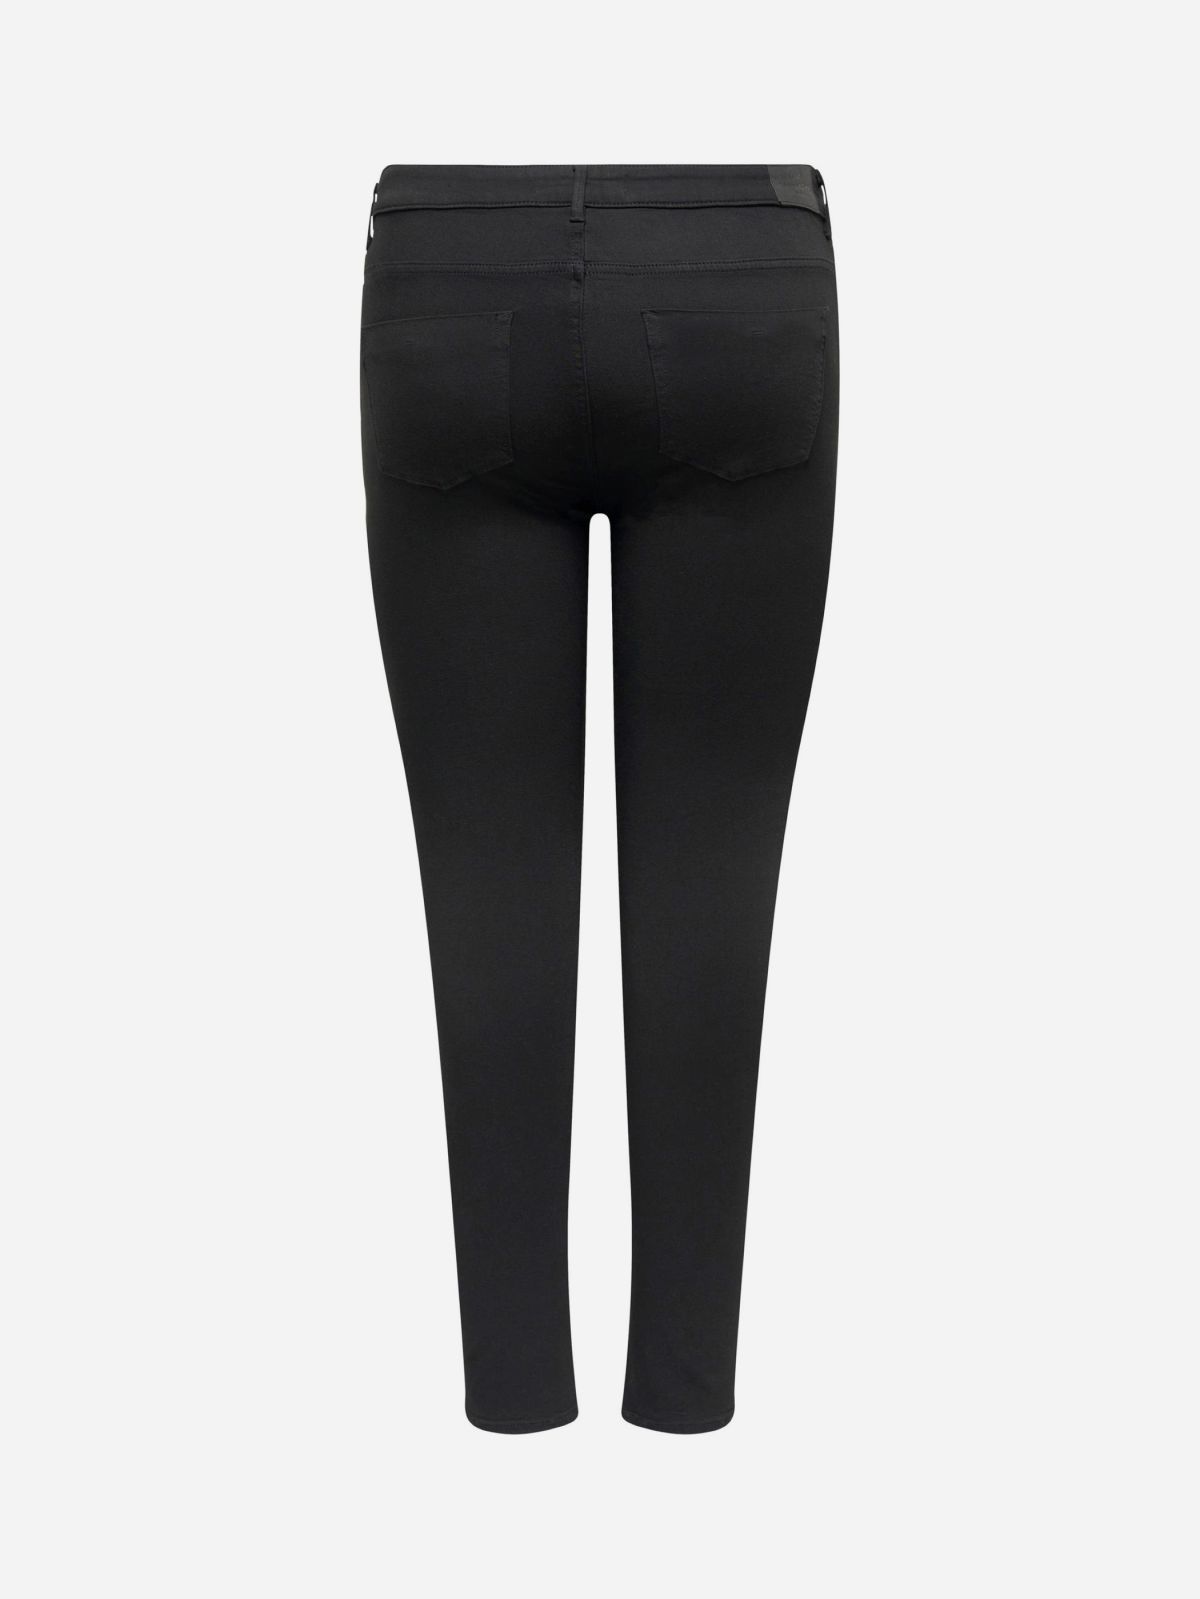  מכנסי ג'ינס ארוכים בגזרת סקיני / נשים של ONLY